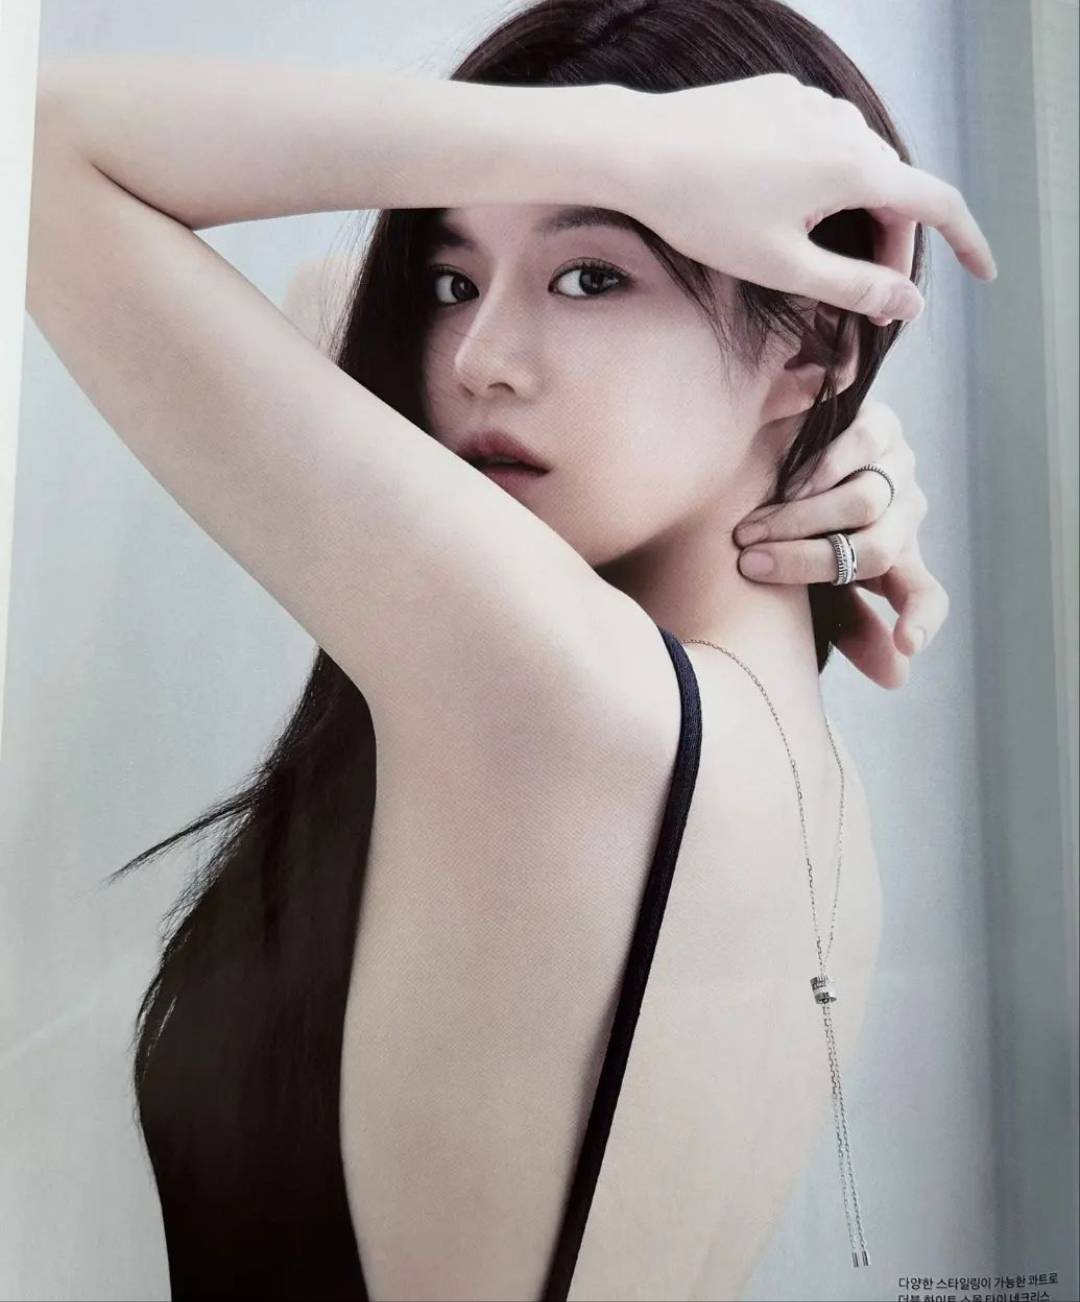 韓國女演員、模特兒韓國最美臉蛋--高允貞 - 亞洲美女 -